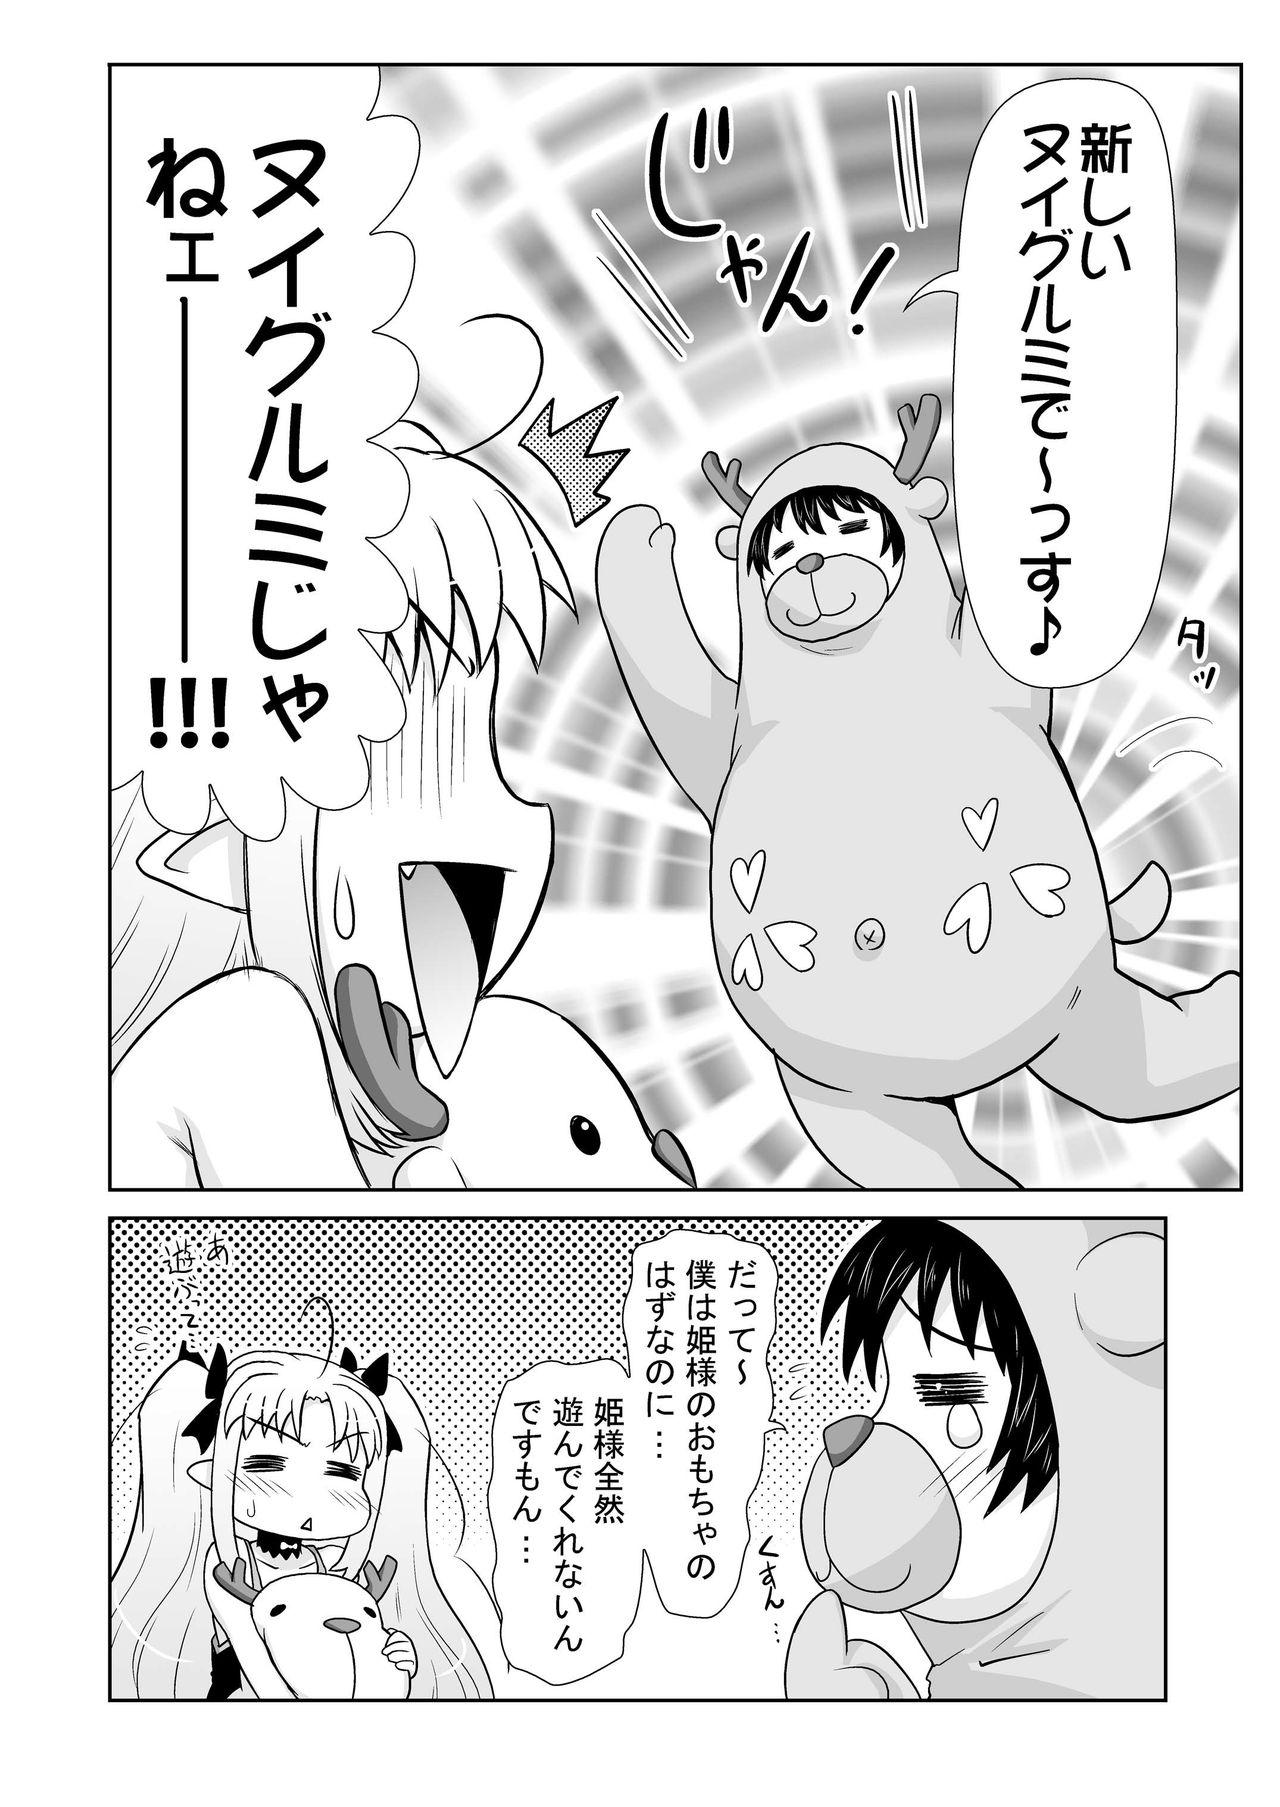 Teenporn Boku wa Lotte-sama no Omocha desu ga, Nani ka? - Lotte no omocha Dom - Page 6